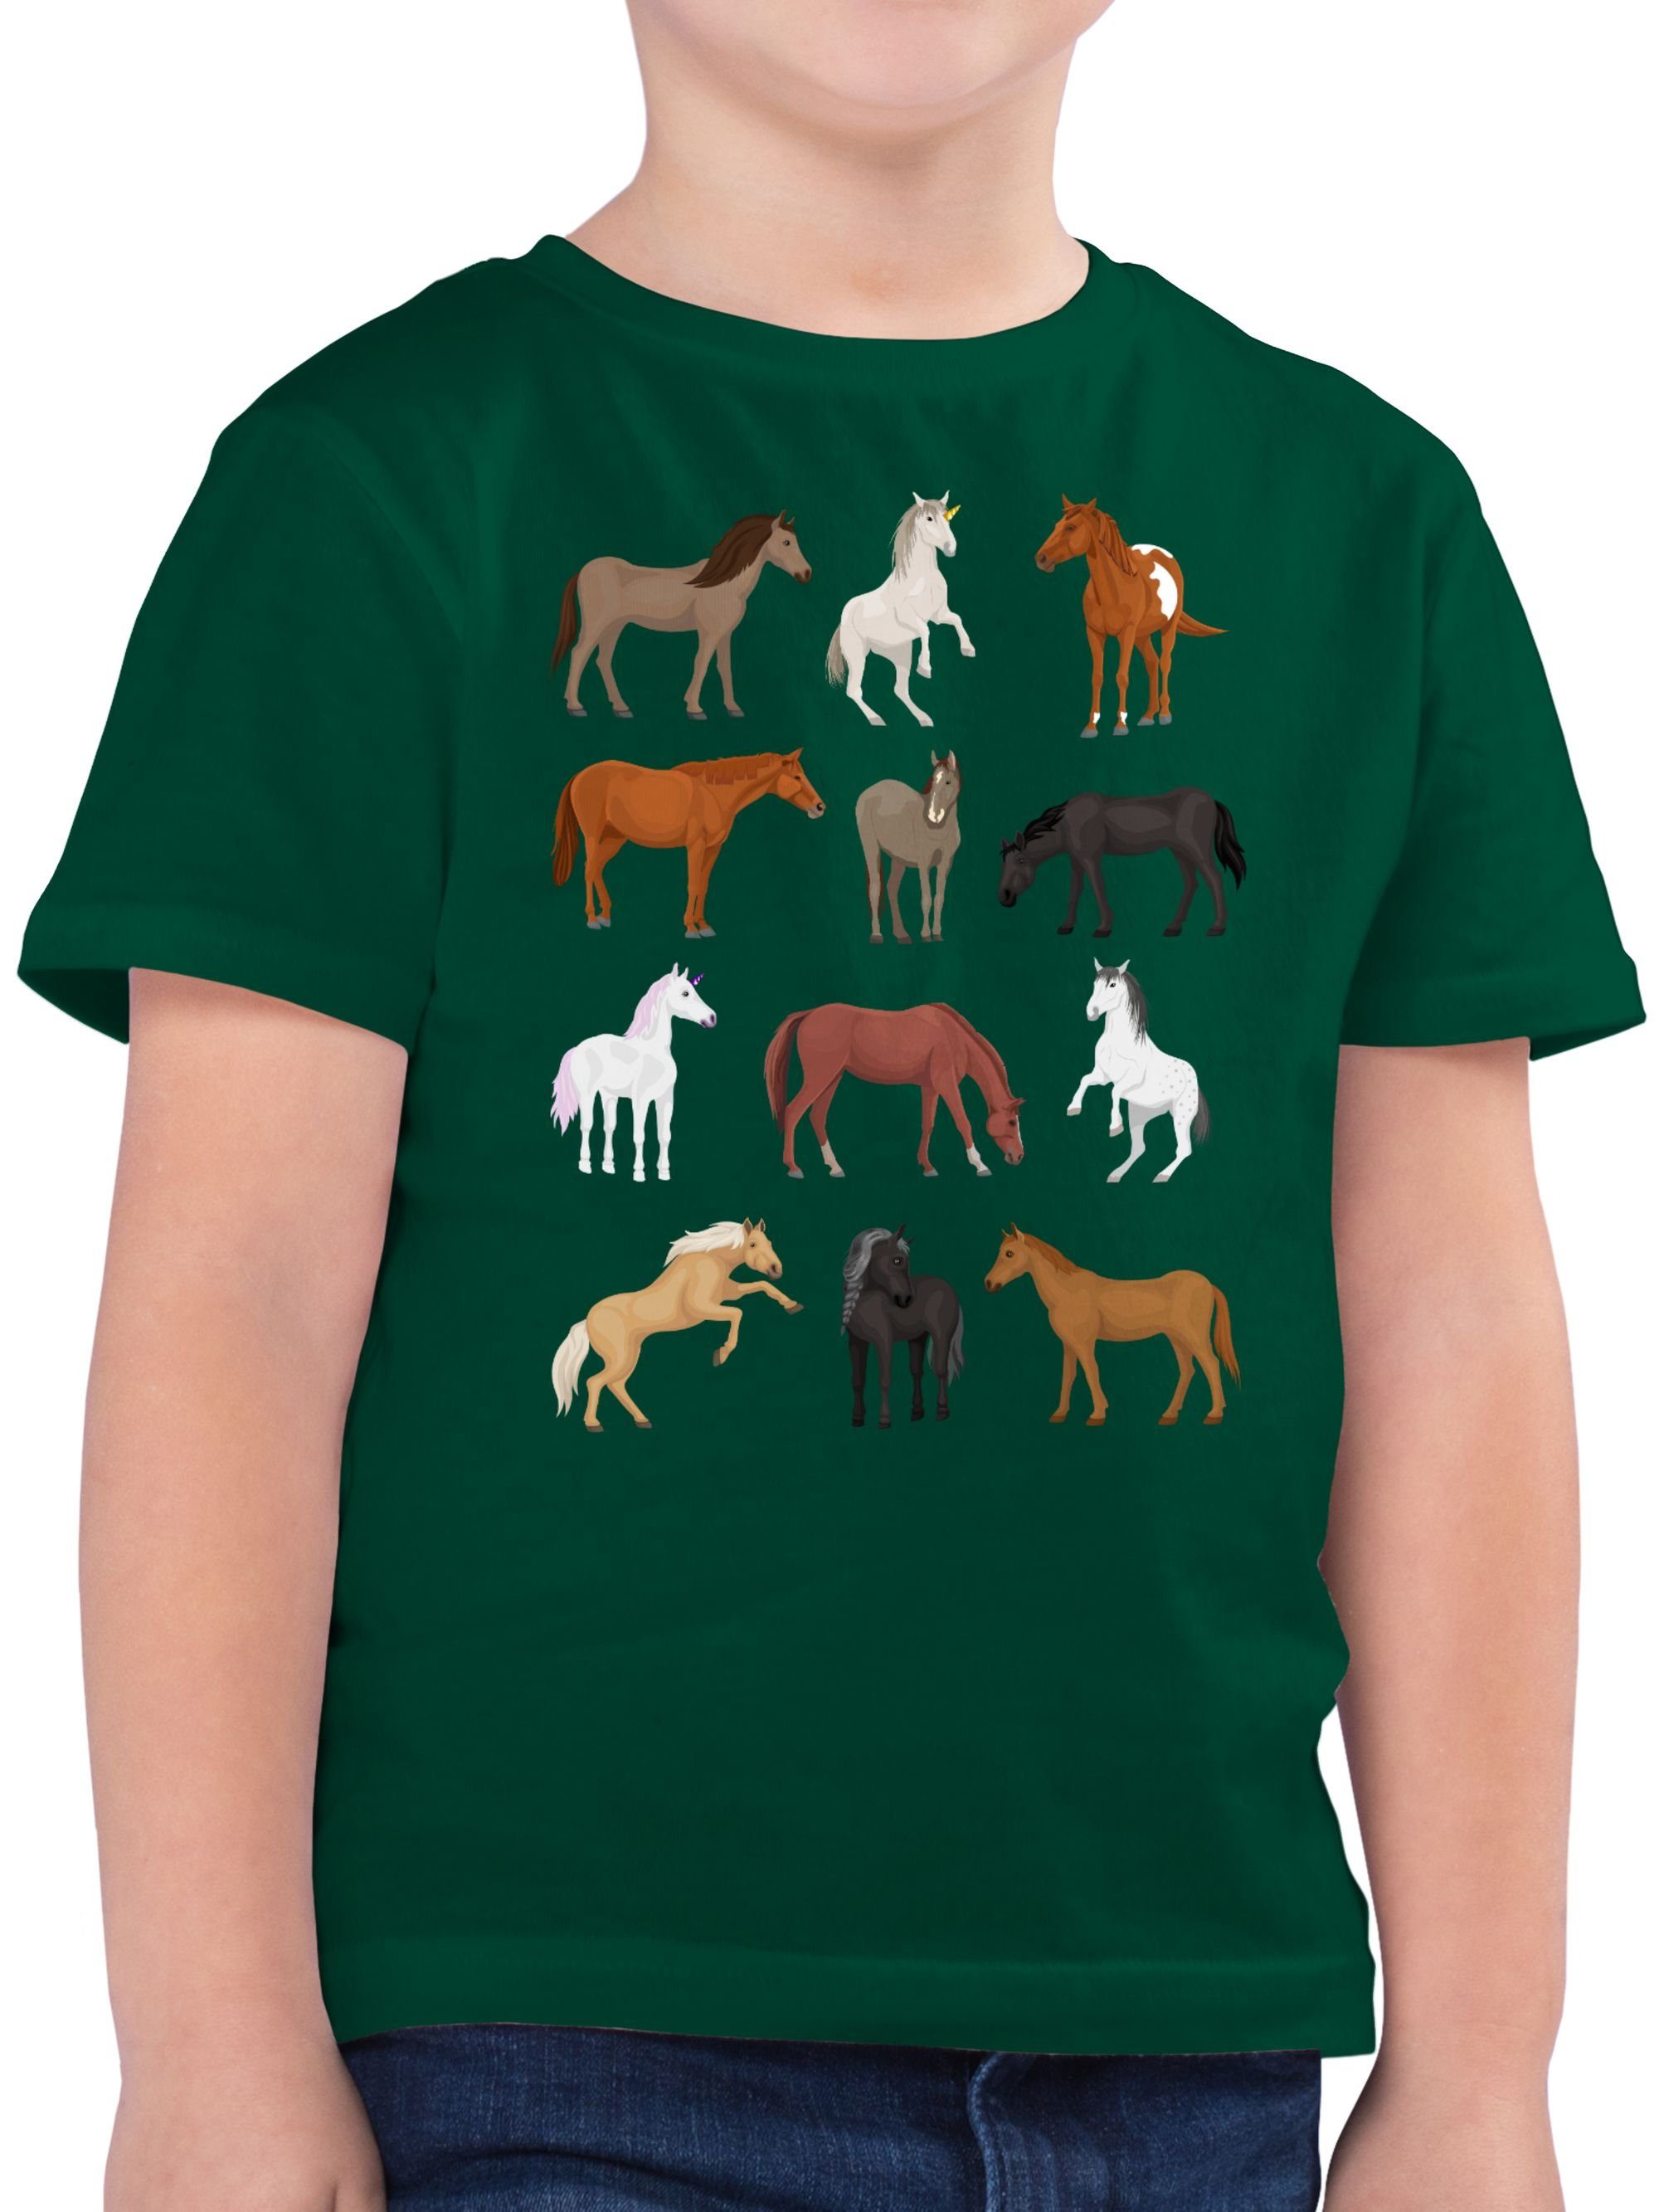 Shirtracer T-Shirt Pferde Reihe - Tiermotiv Animal Print - Jungen Kinder T-Shirt  pferde tshirt kinder - pferd shirt - teschrt